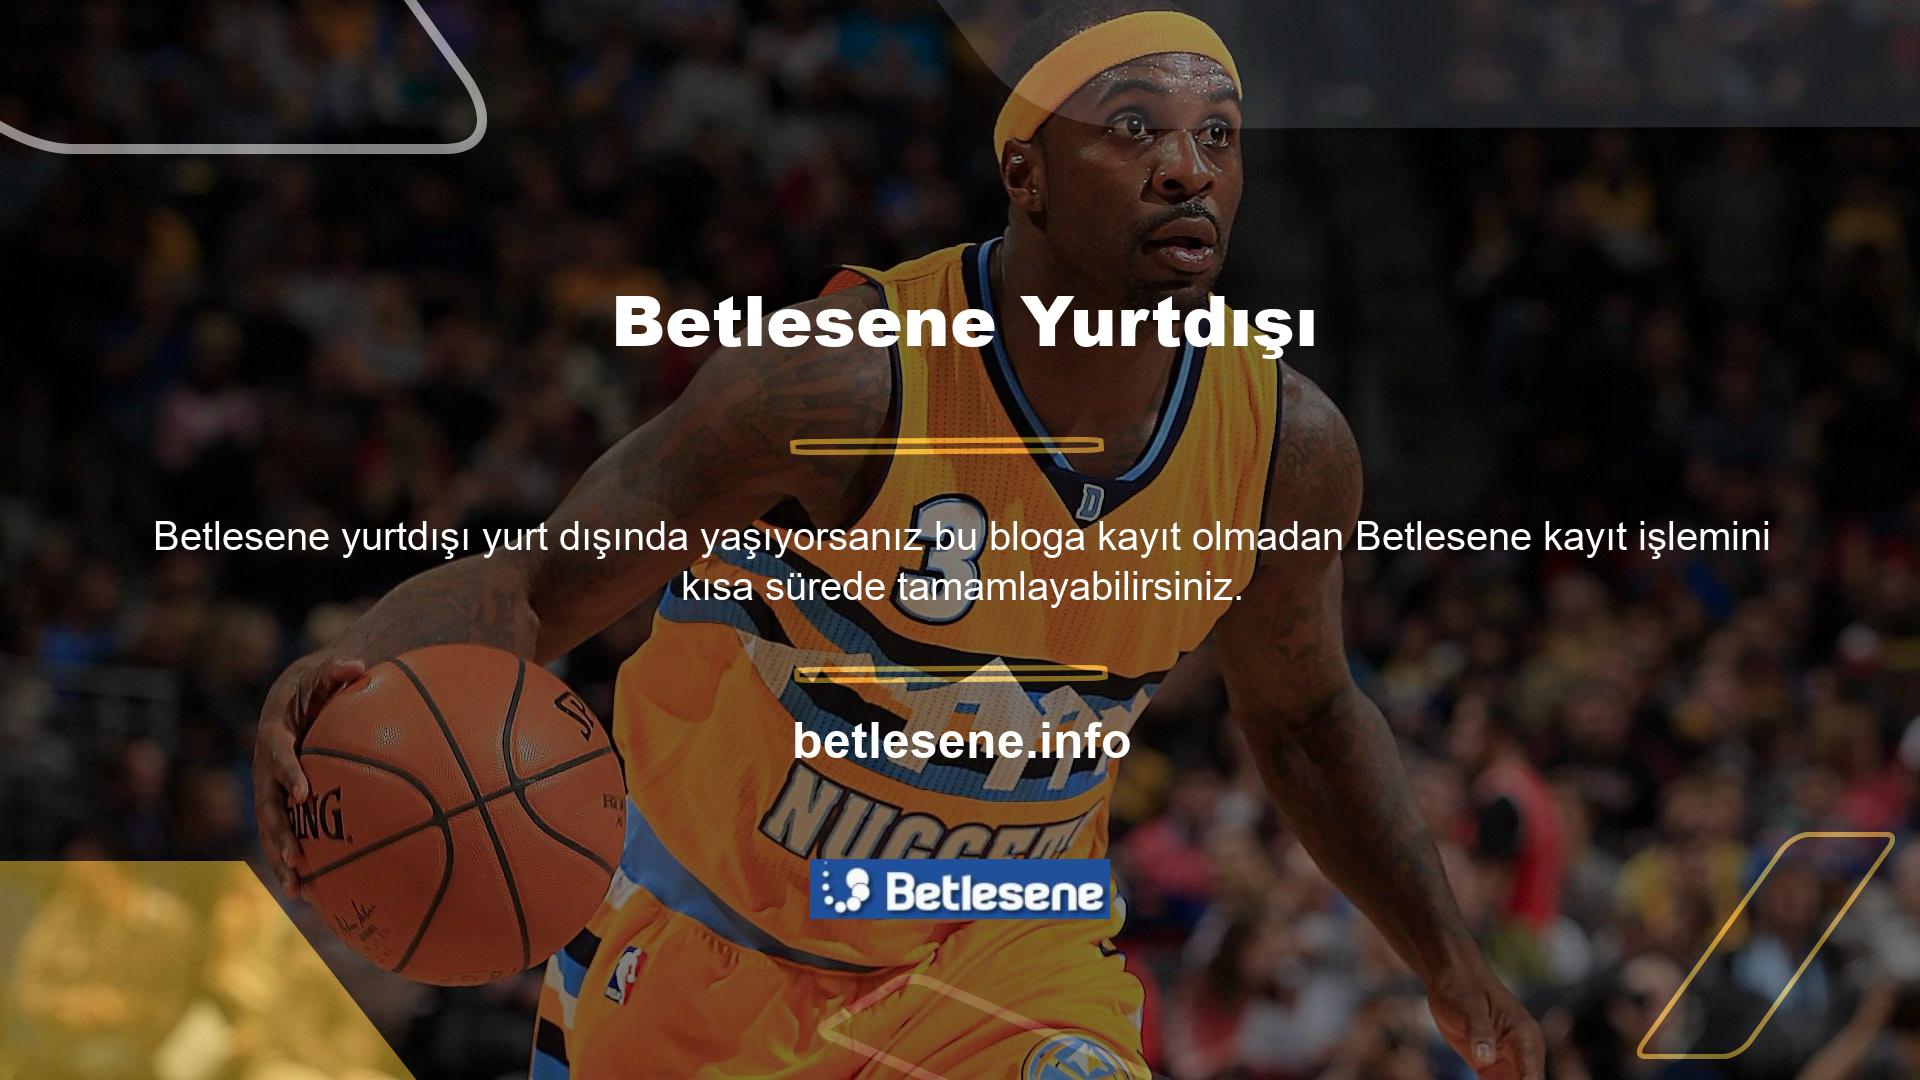 Ancak Türkiye’de internet erişiminiz varsa Betlesene web sitesini yeni Betlesene URL’si ile kullanmanıza gerek yoktur